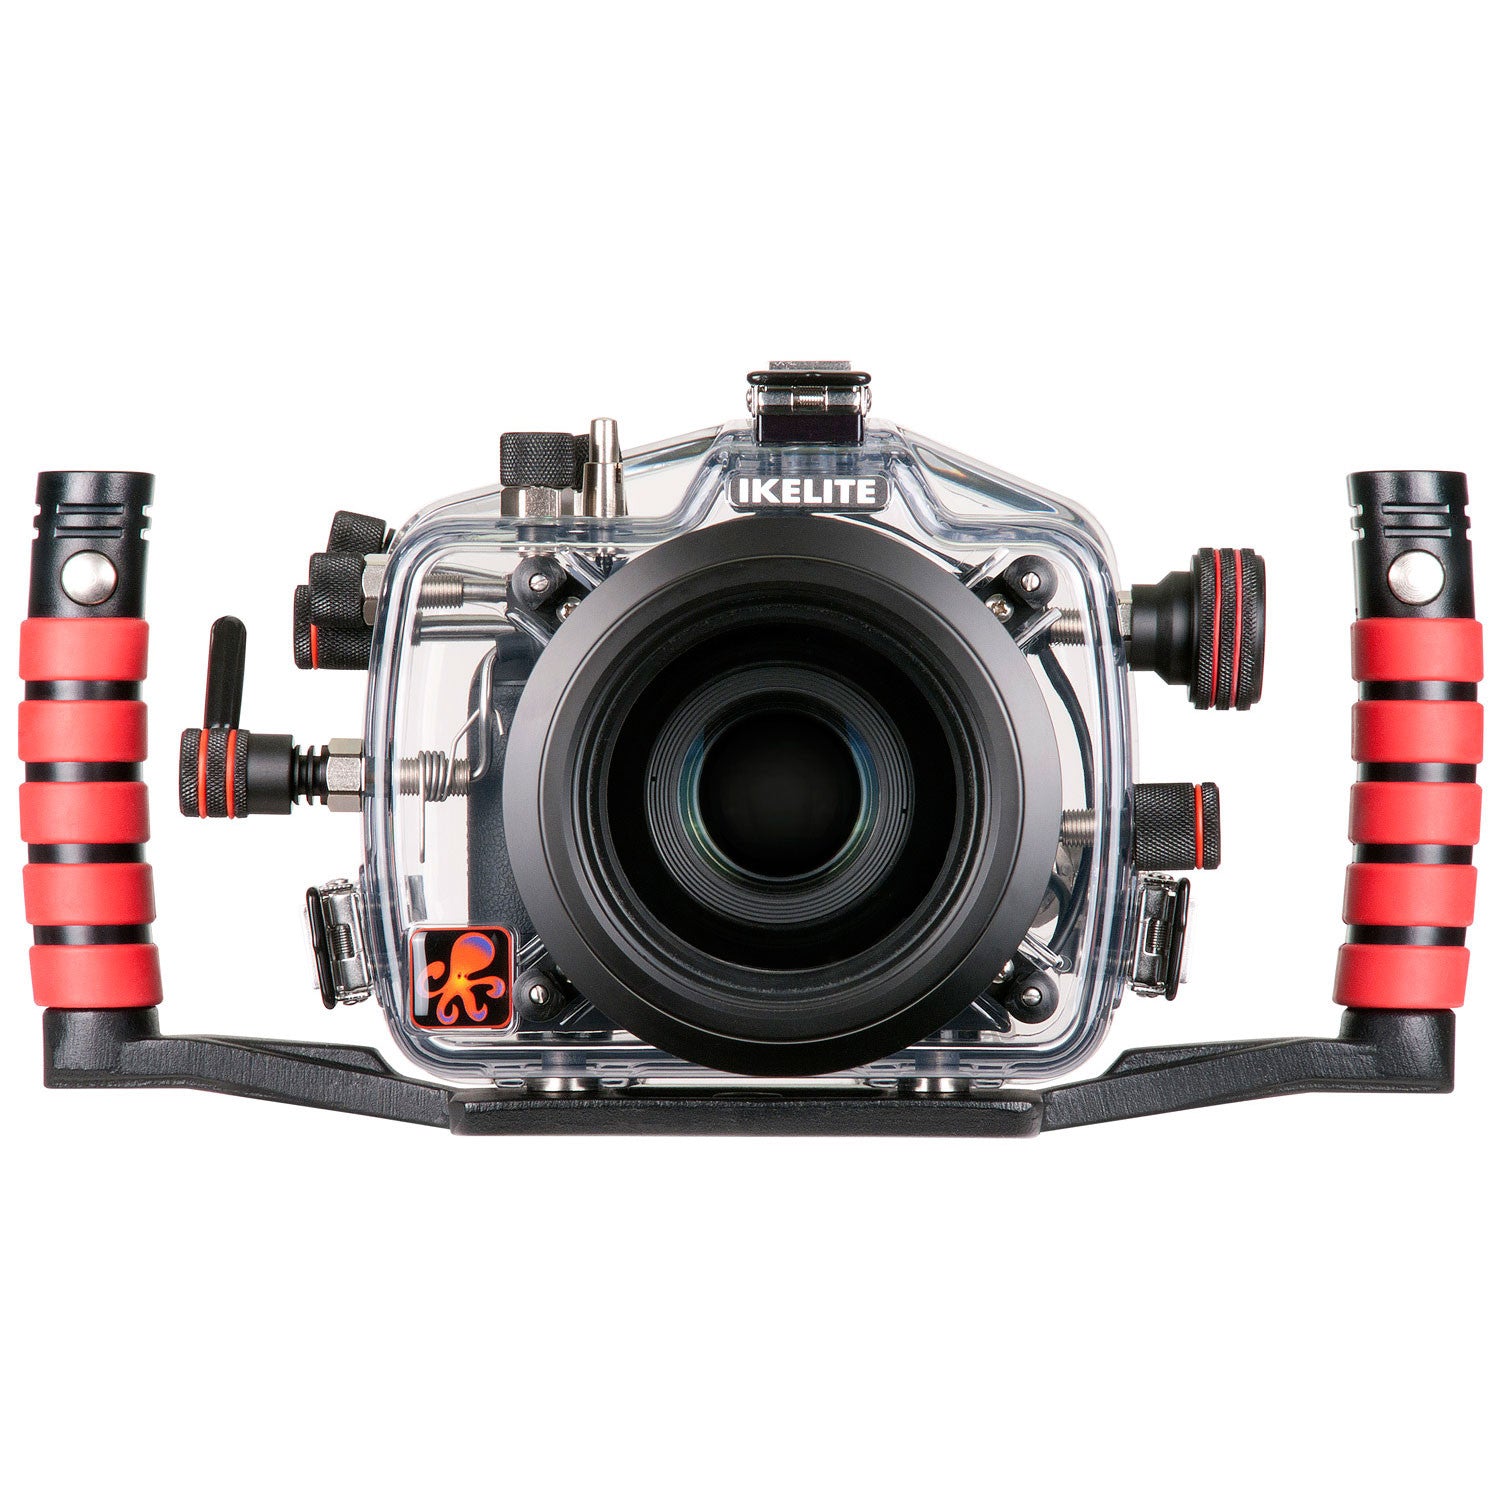 200FL Underwater TTL Housing for Canon EOS 650D, 700D, Rebel T4i, Rebel T5i